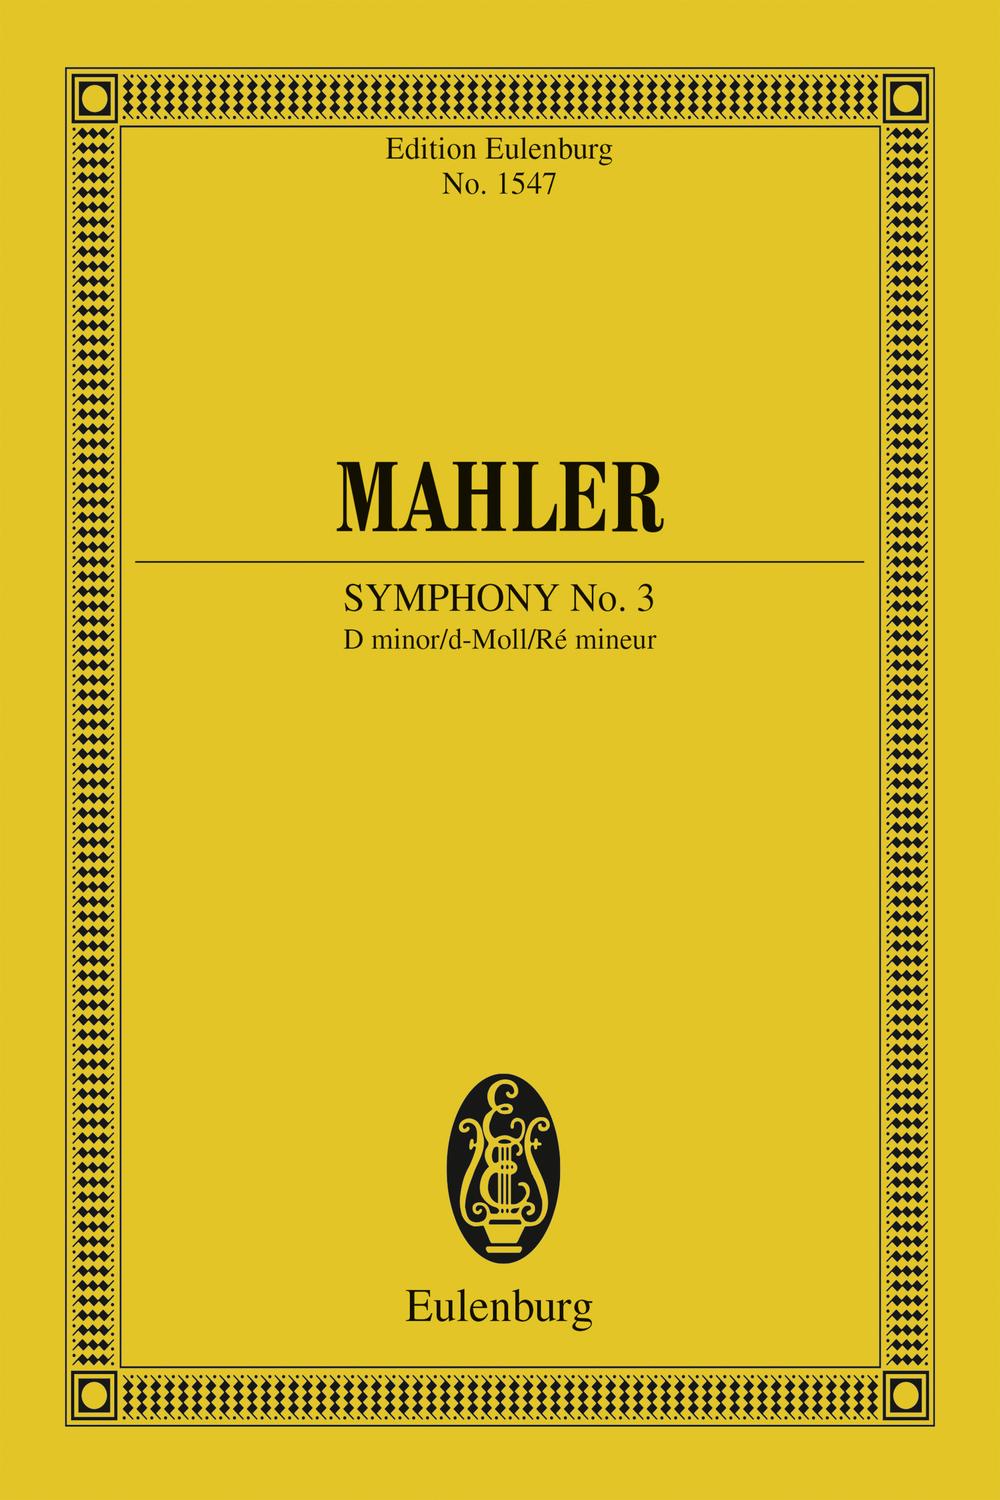 Symphony No. 9 - Gustav Mahler,,